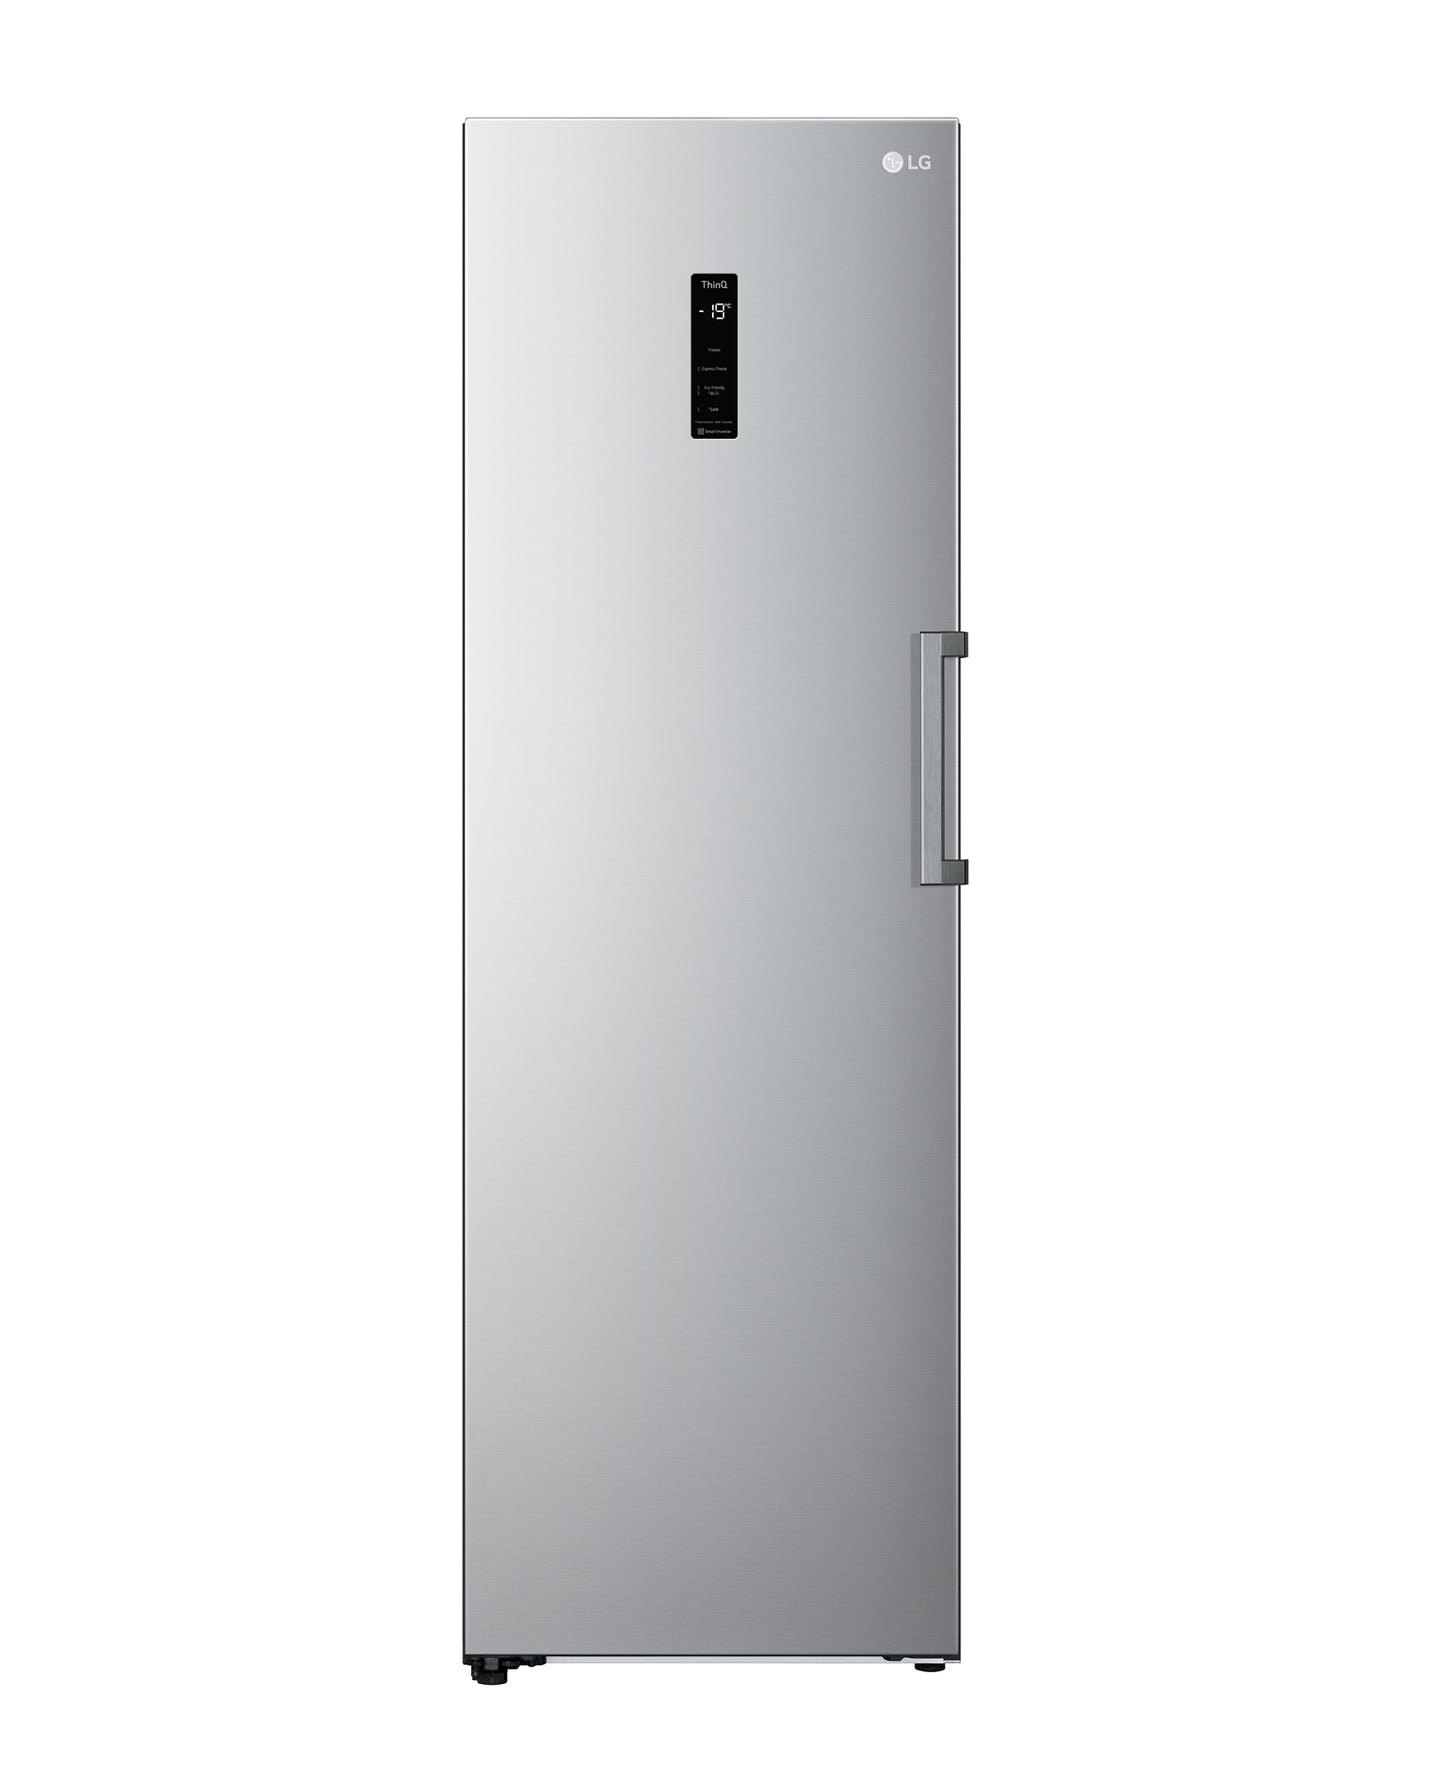 LG 324L Upright Freezer - Silver